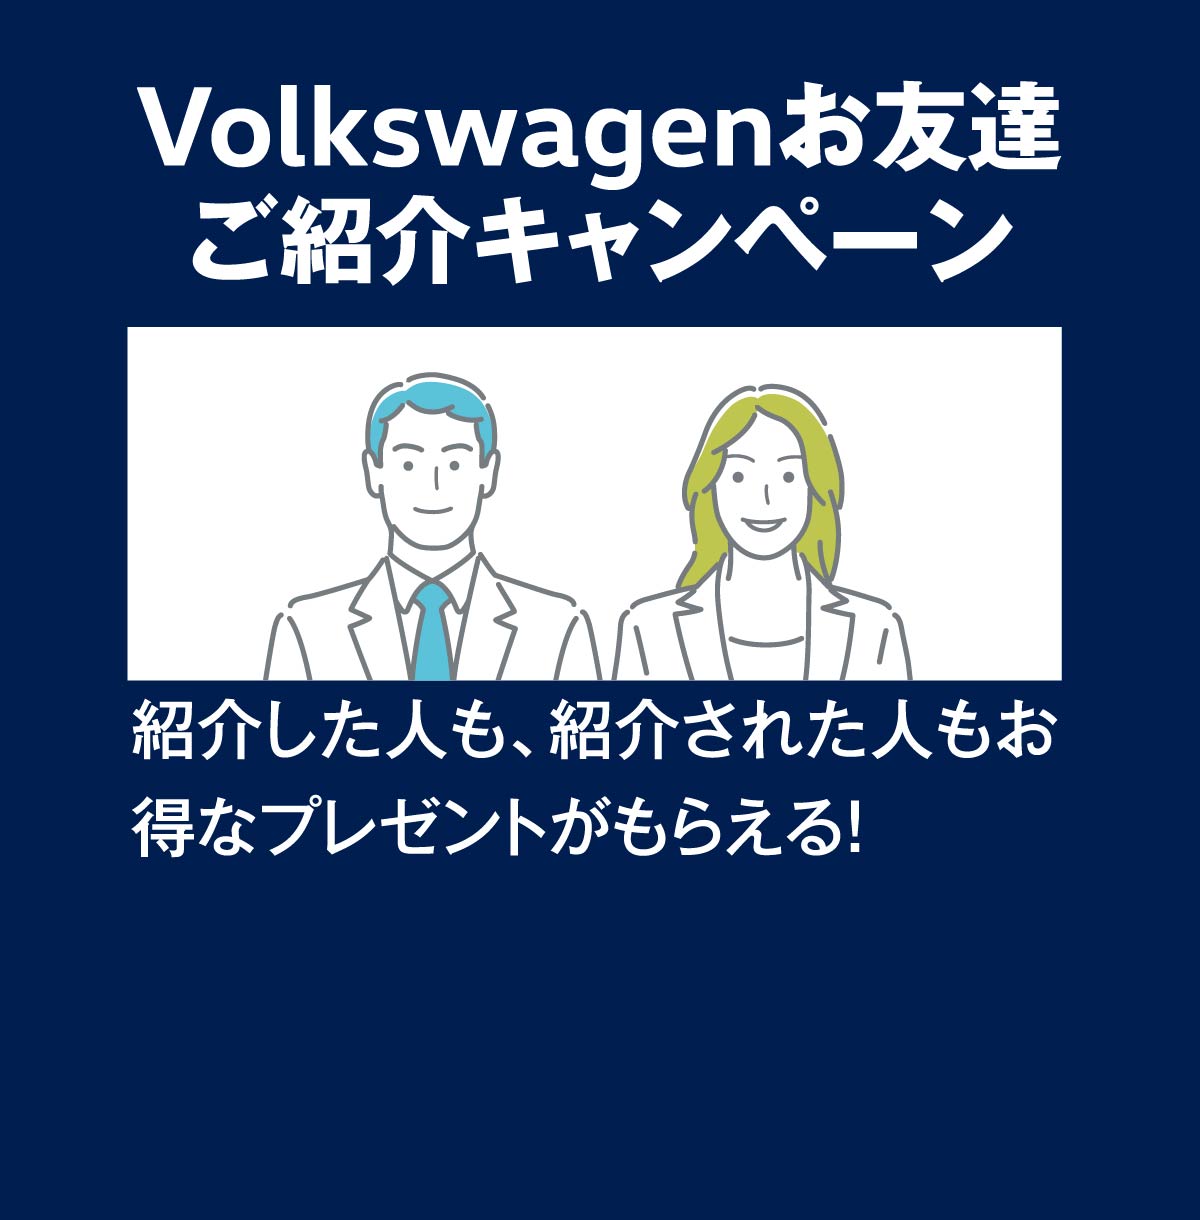 Volkswagenお友達ご紹介キャンペーン